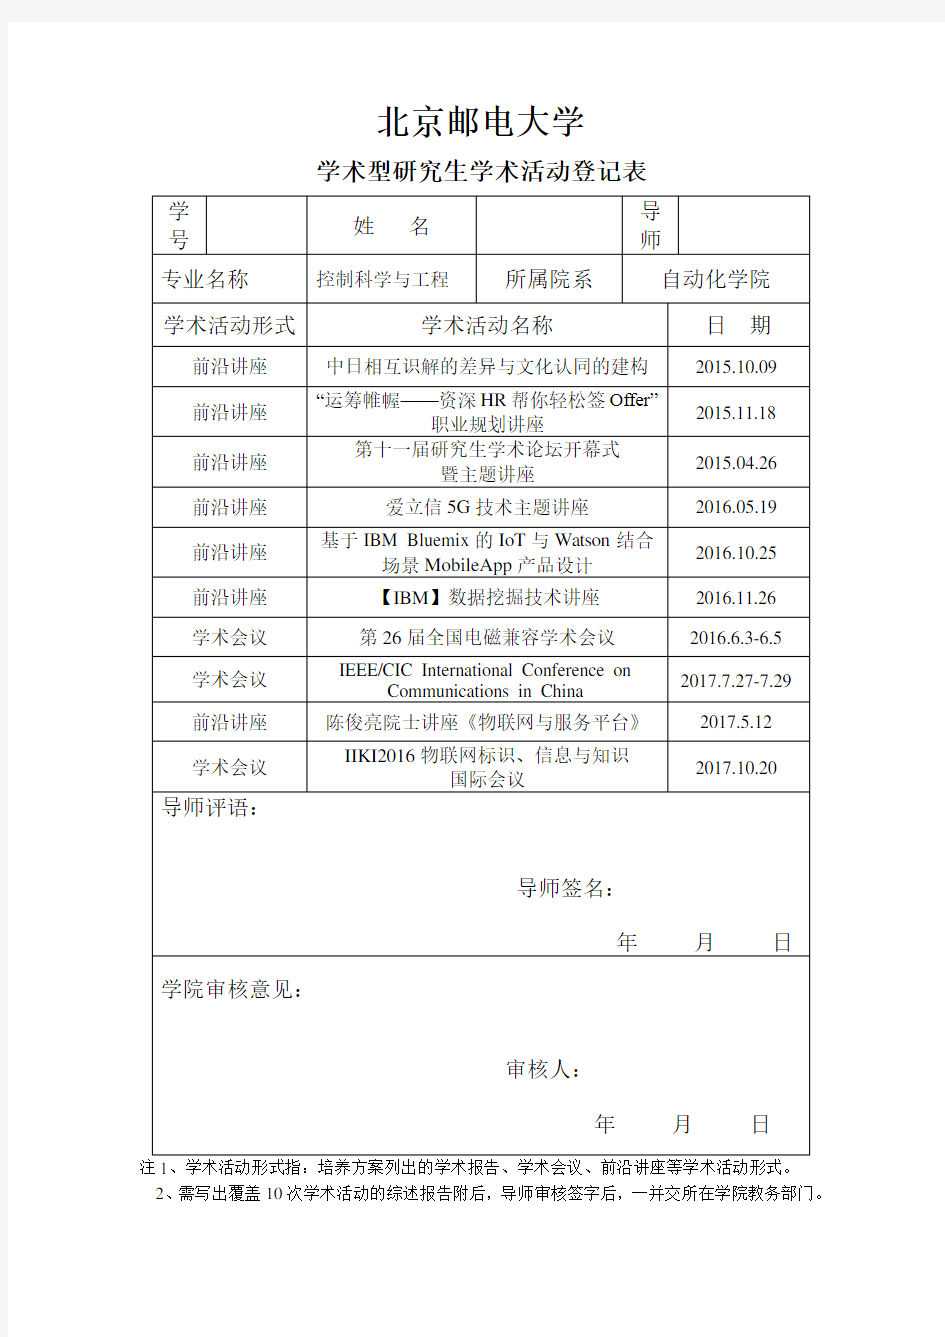 北京邮电大学学术型研究生学术活动登记表和综述报告